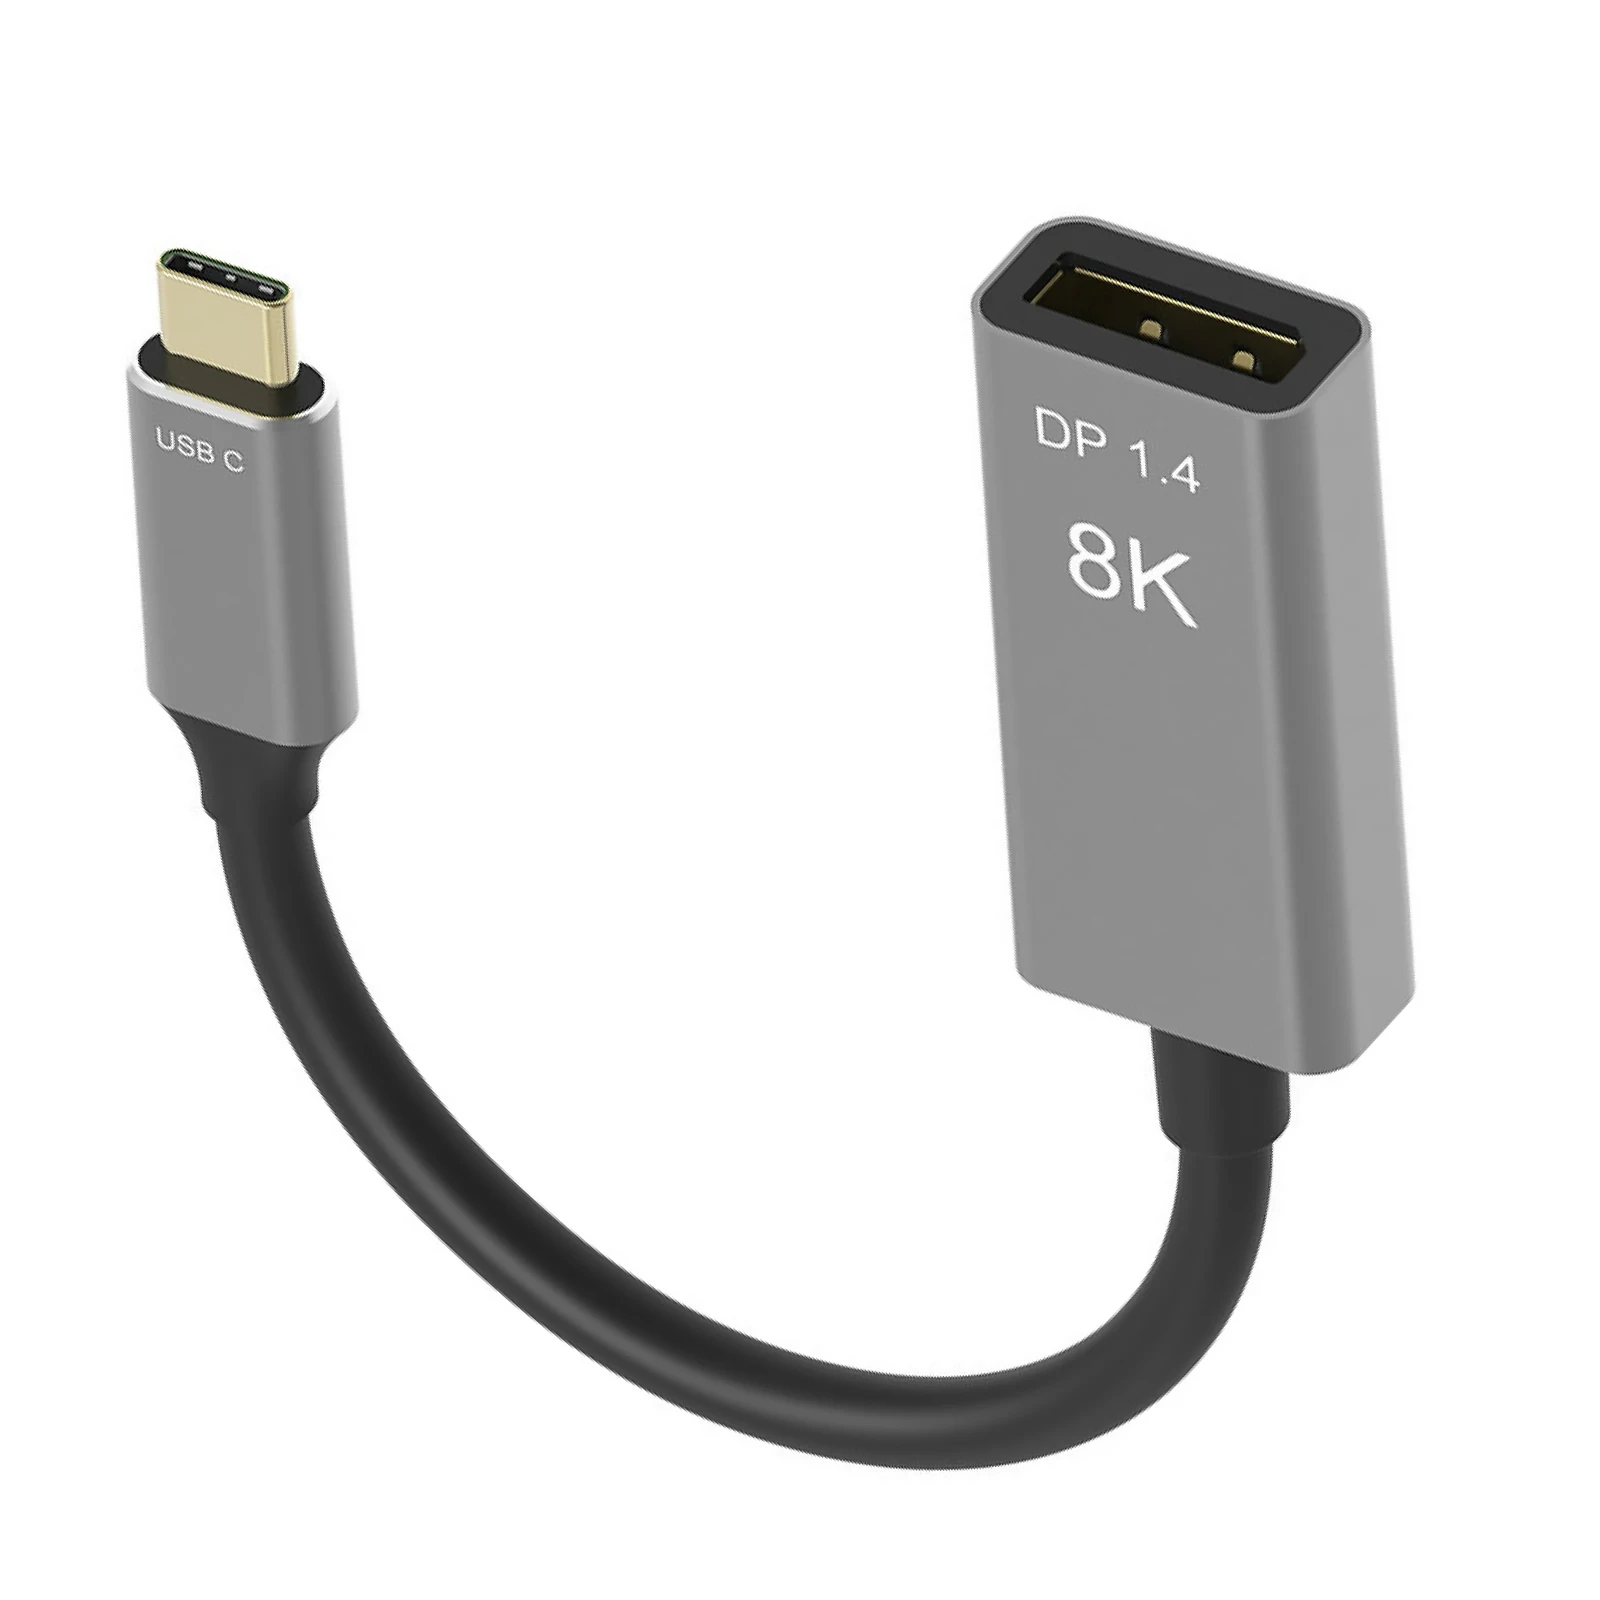 

Кабель USB C-DisplayPort 1,4 8K, кабель 8K @ 60 Гц, 4K @ 144 Гц «штырь-гнездо», 20 см, Type C Thunderbolt 3 в DP, конвертер для Mac, ПК, аксессуары